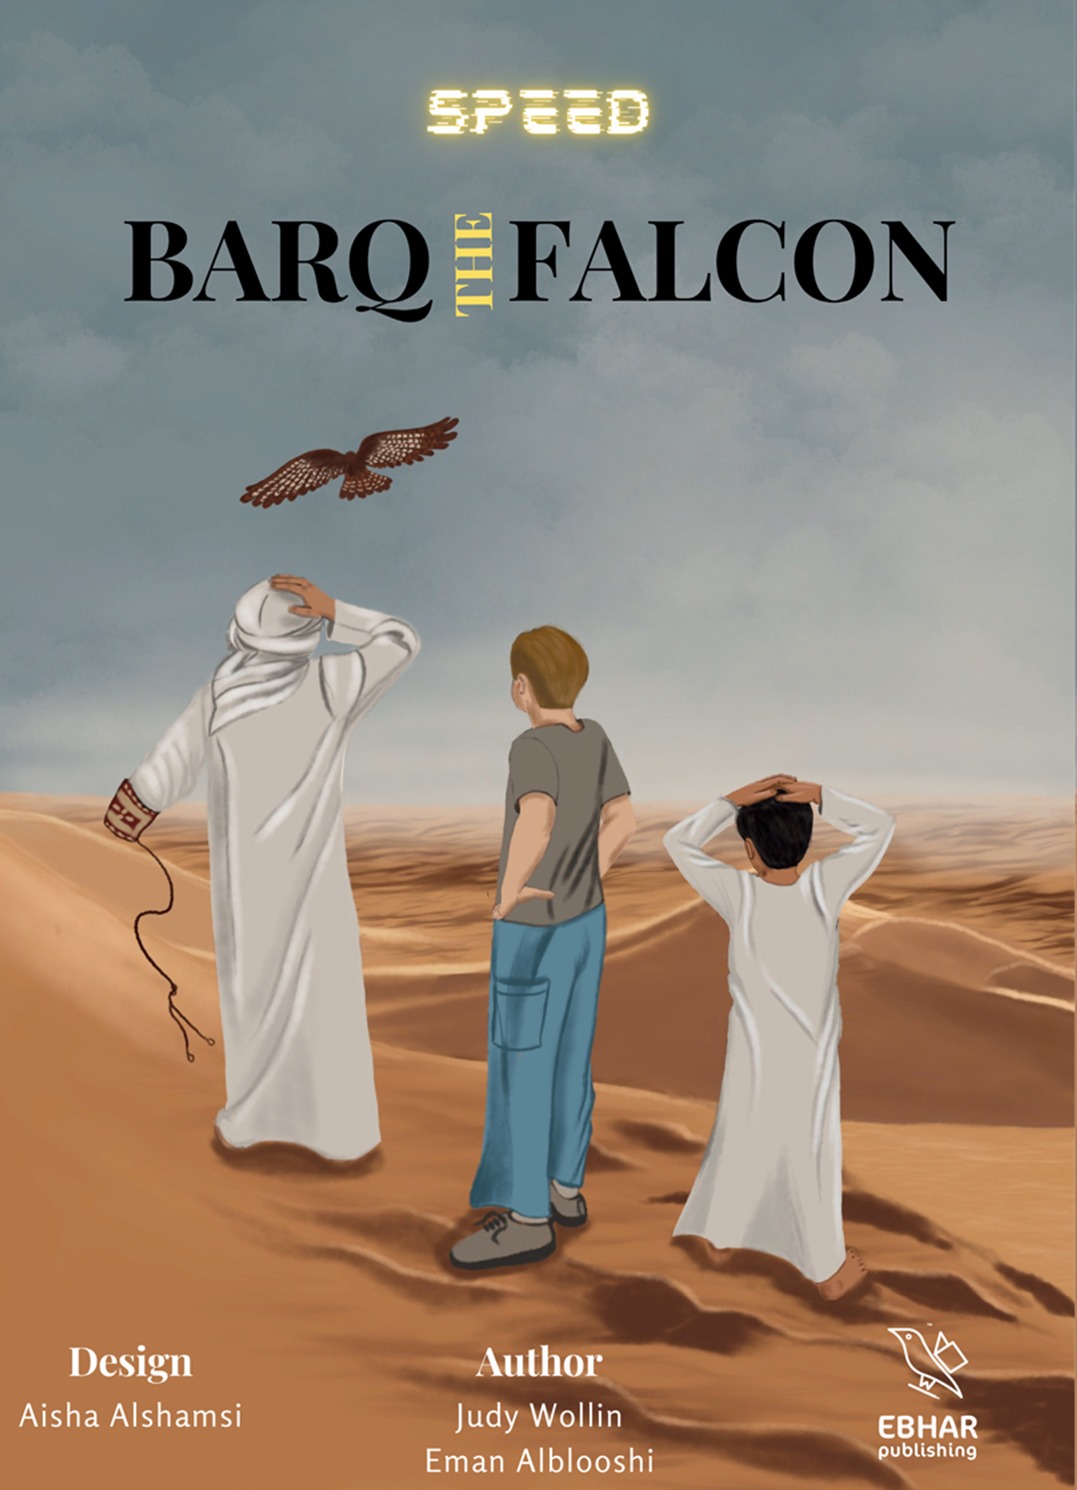 Barq the falcon